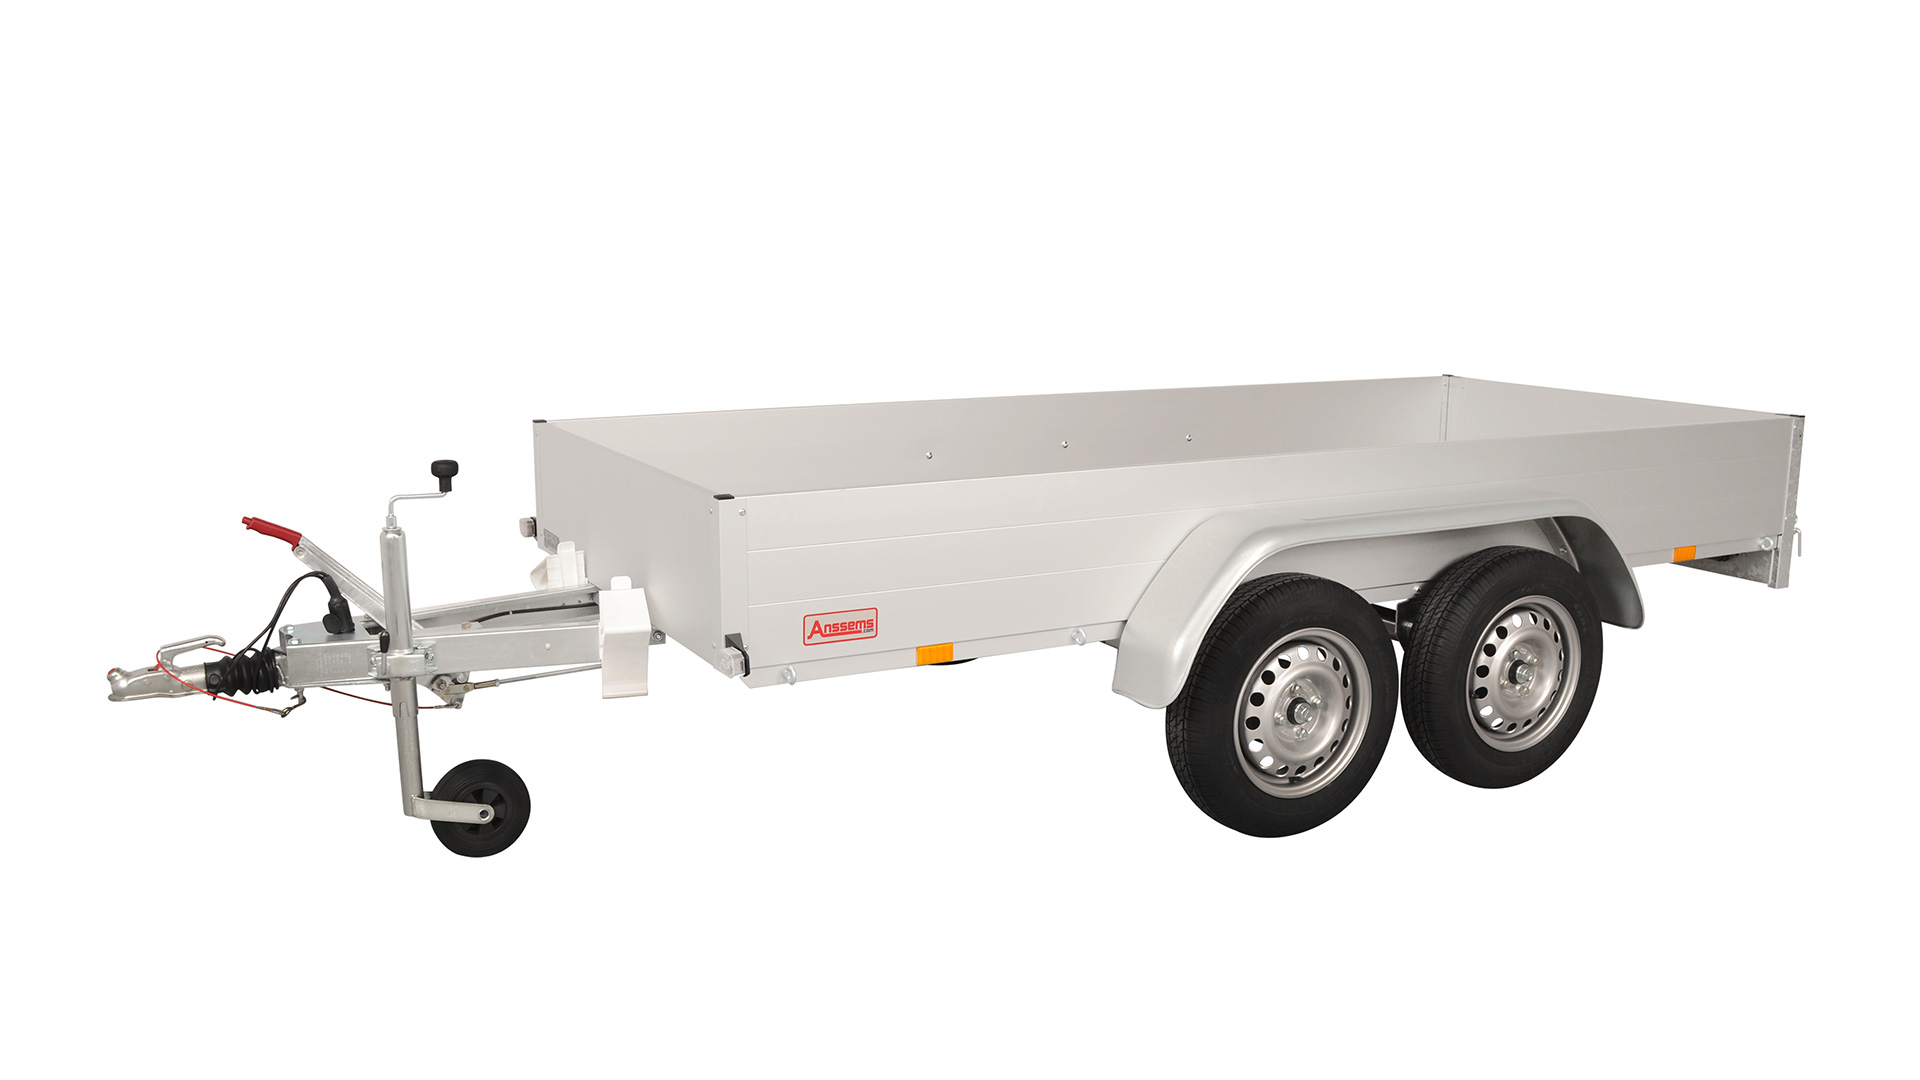 Anssems PKW Anhänger Tieflader Alu 1500 kg, Ladefläche 3,01x 1,26 m